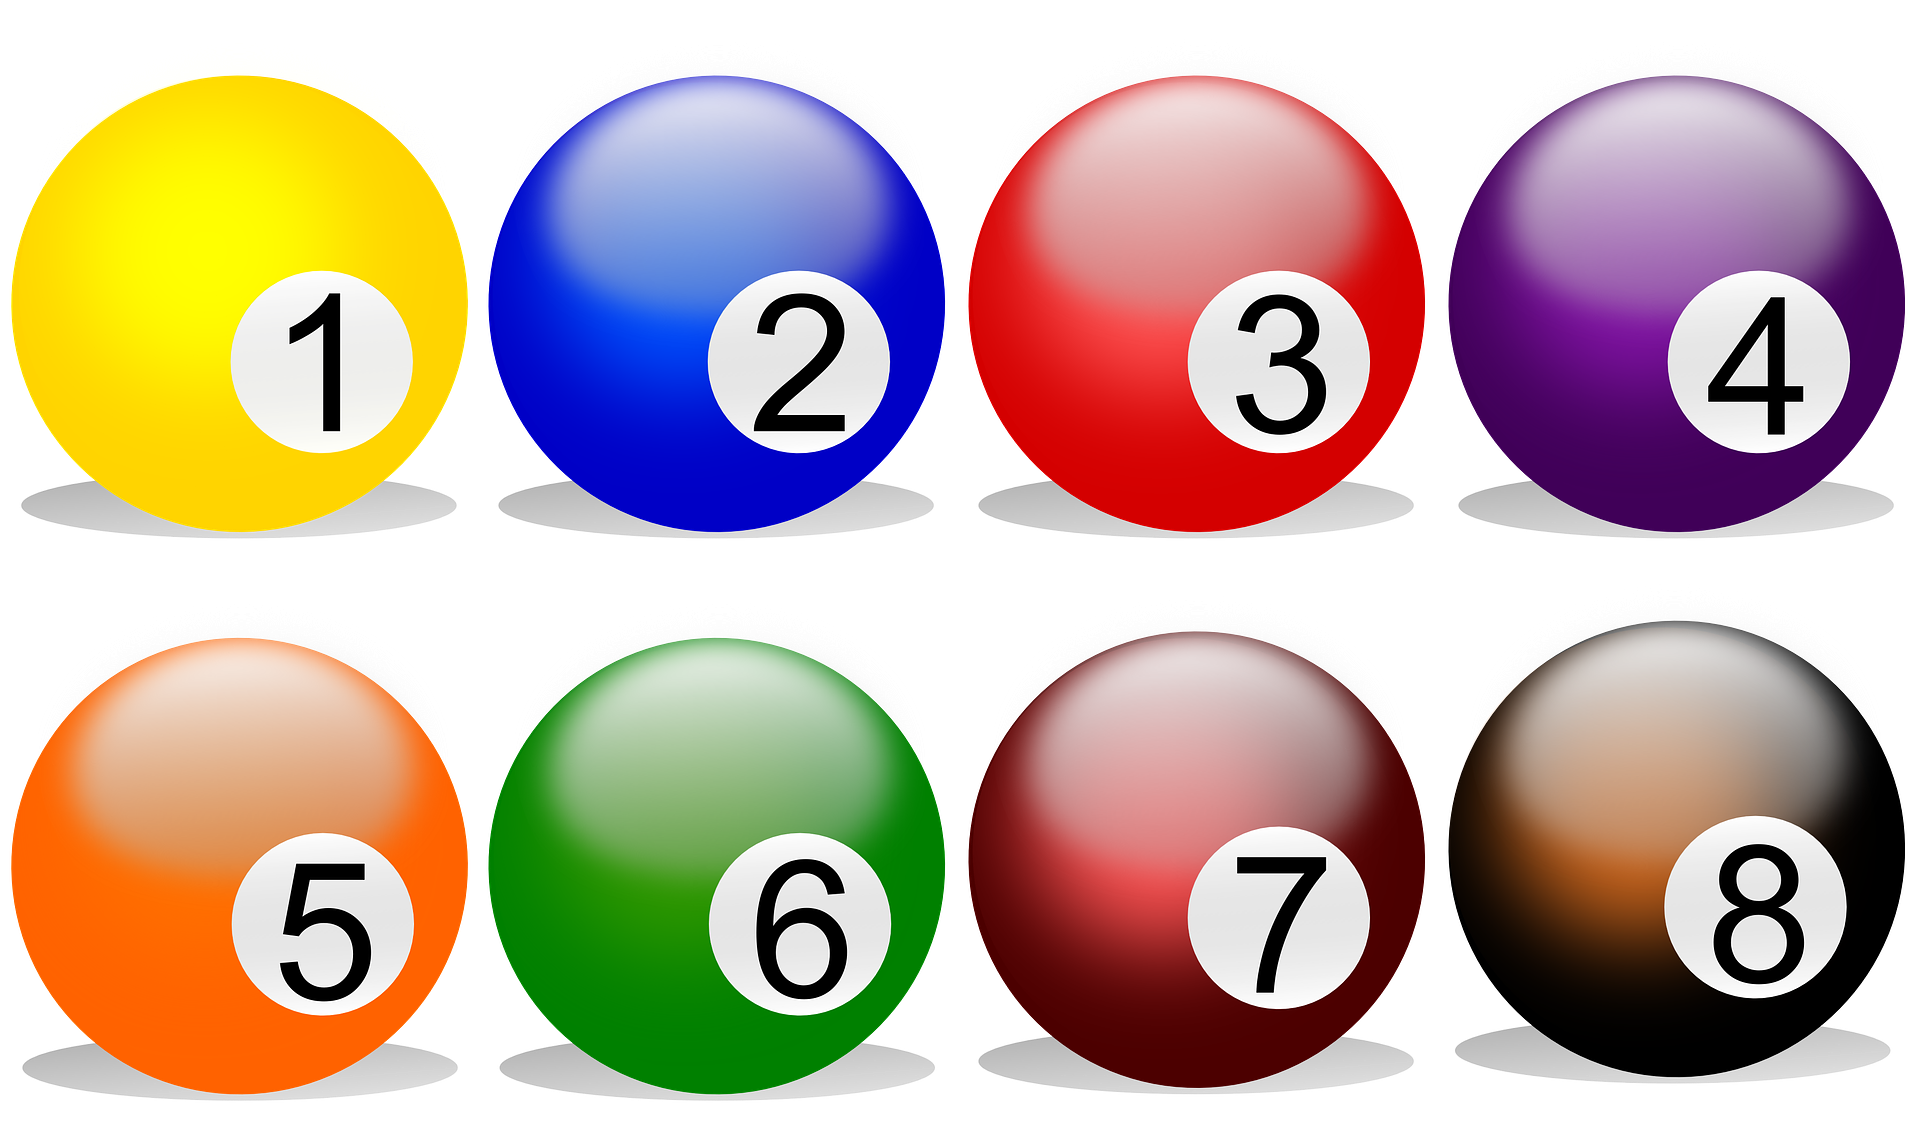 Åtta bollar symboliserar åtta säljtips